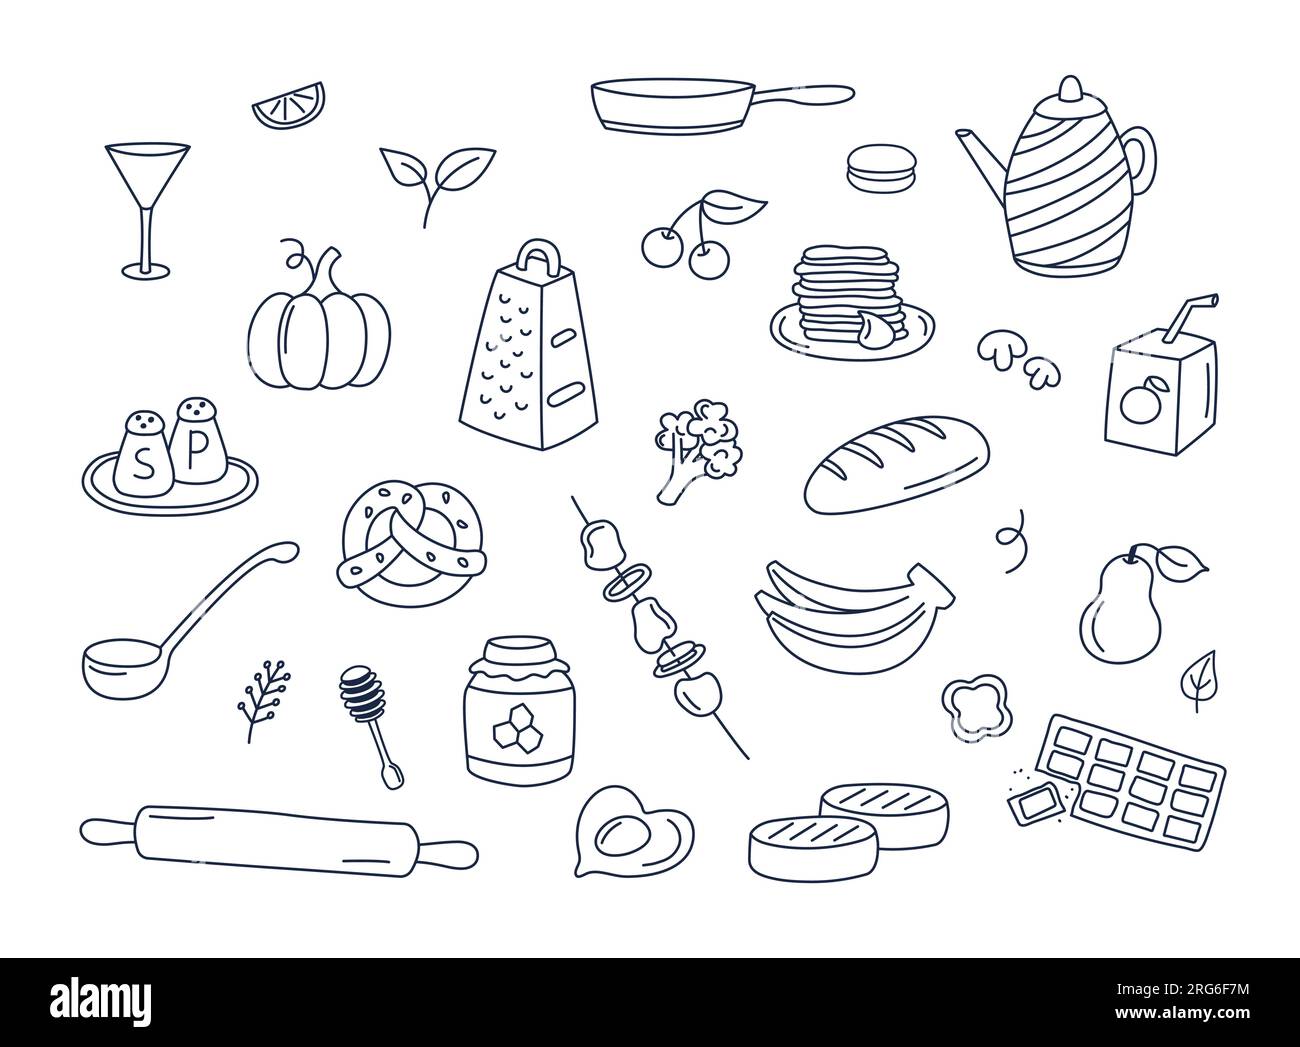 Lebensmittel und Küchenartikel Kritzeleien Vektorsatz isolierter Elemente. Kochen Doodle Illustrationen Sammlung von Utensilien, Essenszutaten, Küchengegenständen. Stock Vektor